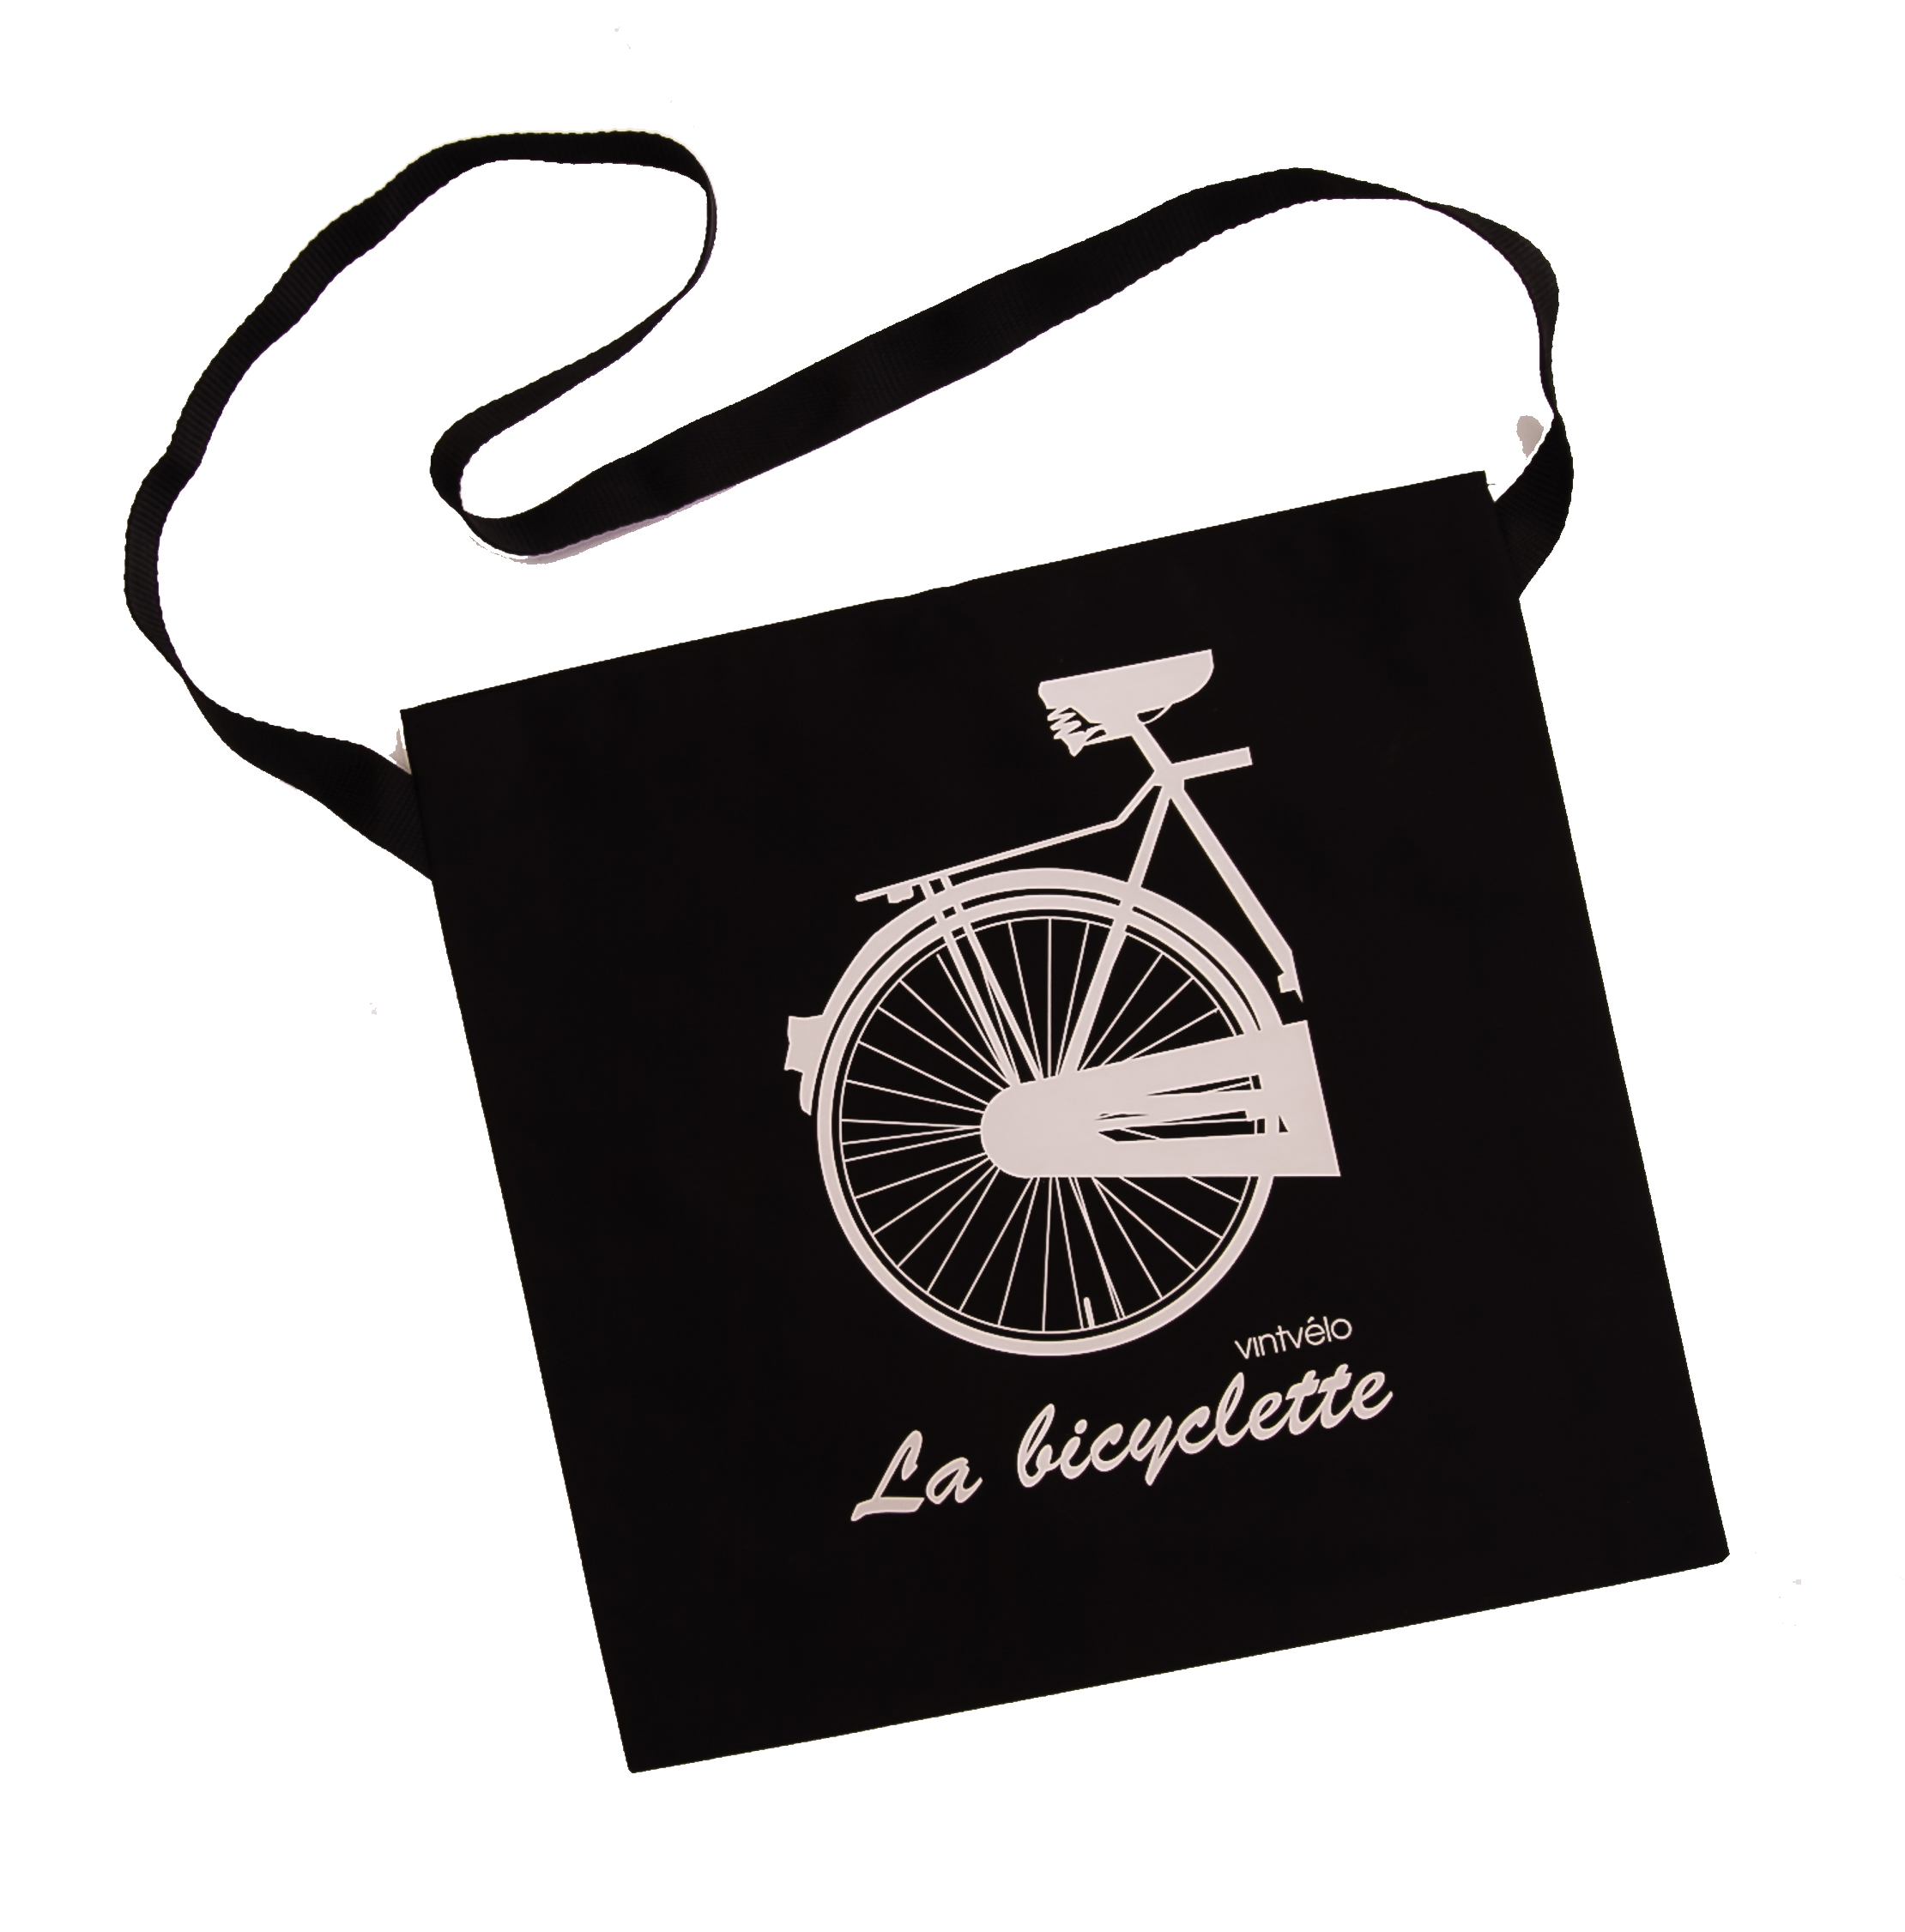 Cycling musette bag – La Bicyclette – vintvélo